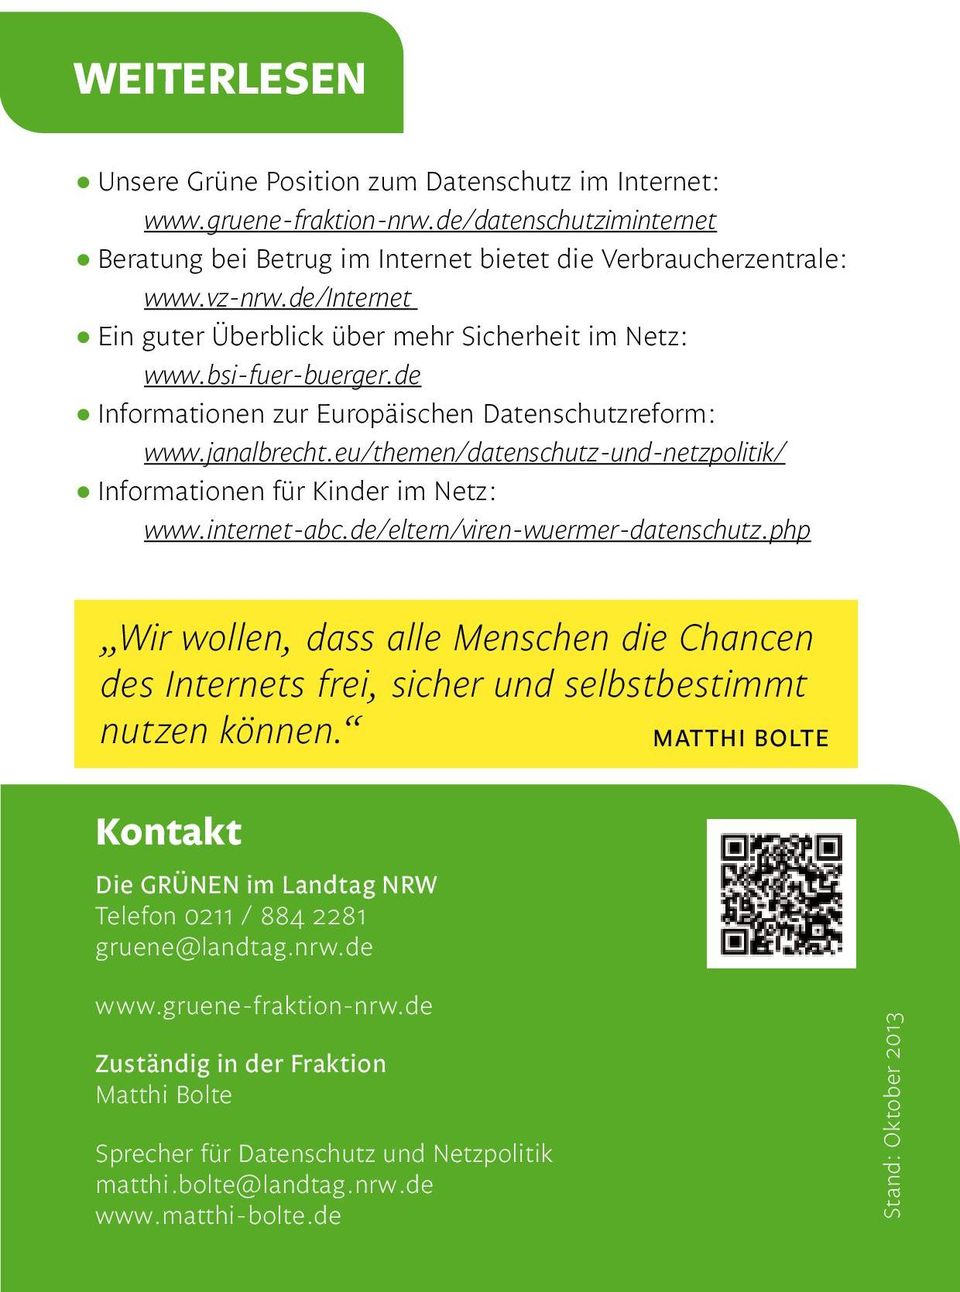 eu/themen/datenschutz-und-netzpolitik/ Informationen für Kinder im Netz: www.internet-abc.de/eltern/viren-wuermer-datenschutz.